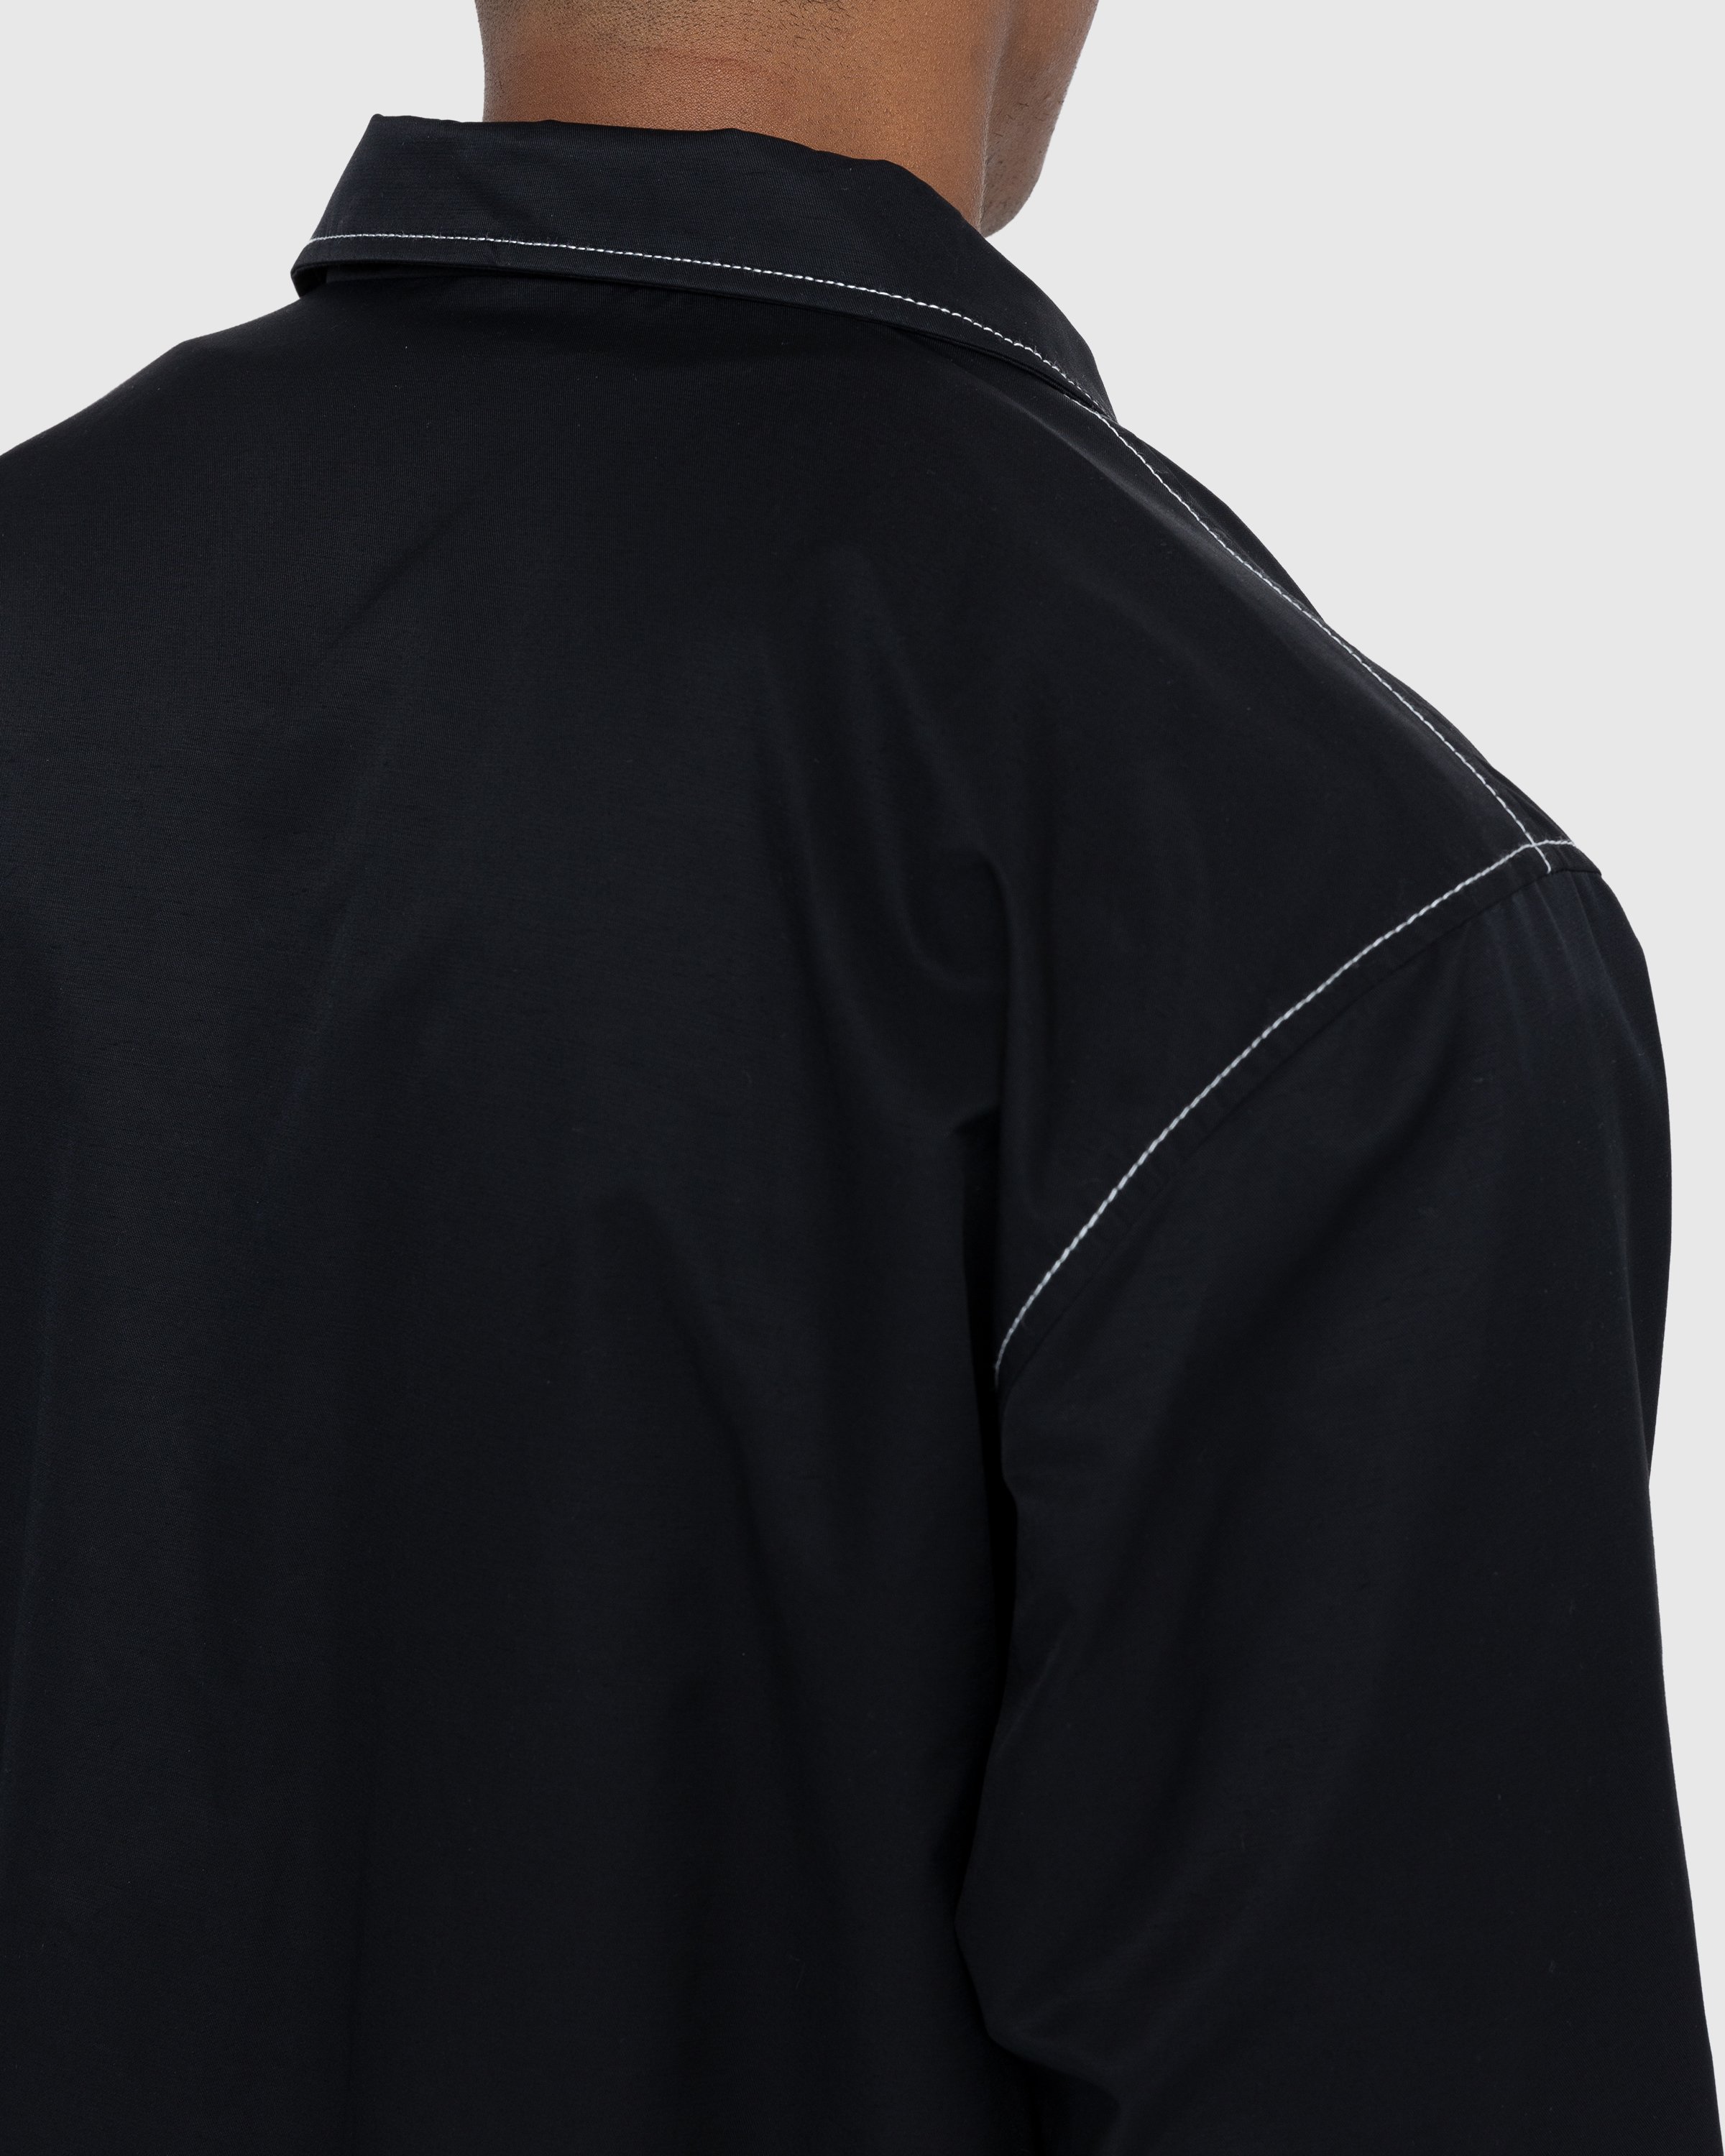 Highsnobiety - Brushed Nylon Jacket Black - Clothing - Black - Image 5